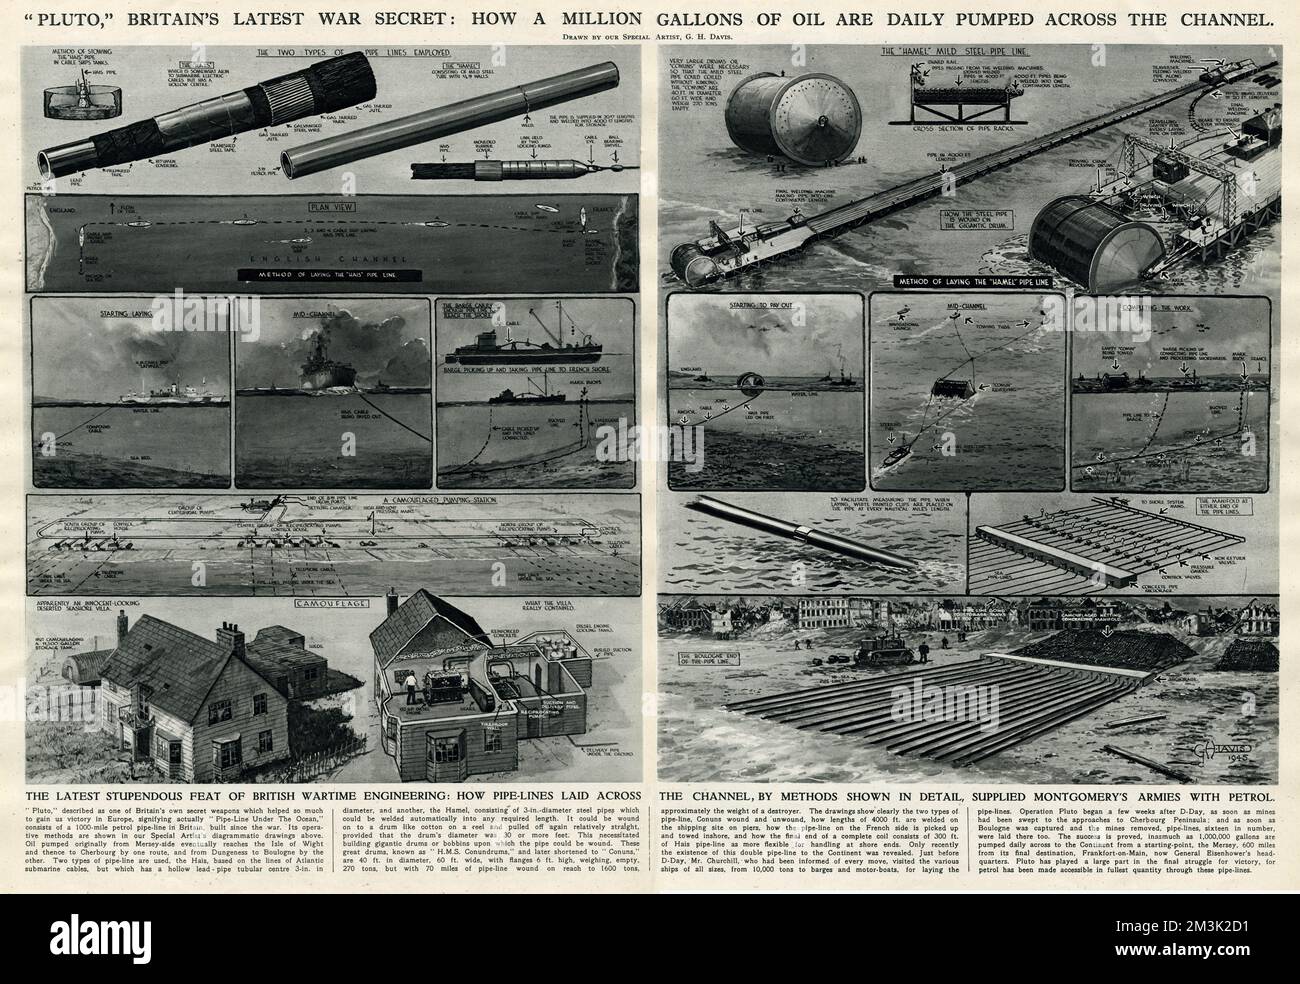 Serie di illustrazioni che mostrano il funzionamento dei tubi 'Plutone' (la linea di tubi sotto l'oceano) attraverso il canale della Manica, che hanno pompato milioni di galloni di benzina dalla Gran Bretagna alla Francia nel corso del 1944 e del 1945. Questo pezzo di ingegneria britannica è stato vitale per il progresso dell'invasione alleata dell'Europa occupata dal luglio 1944 in poi. Data: 1945 Foto Stock